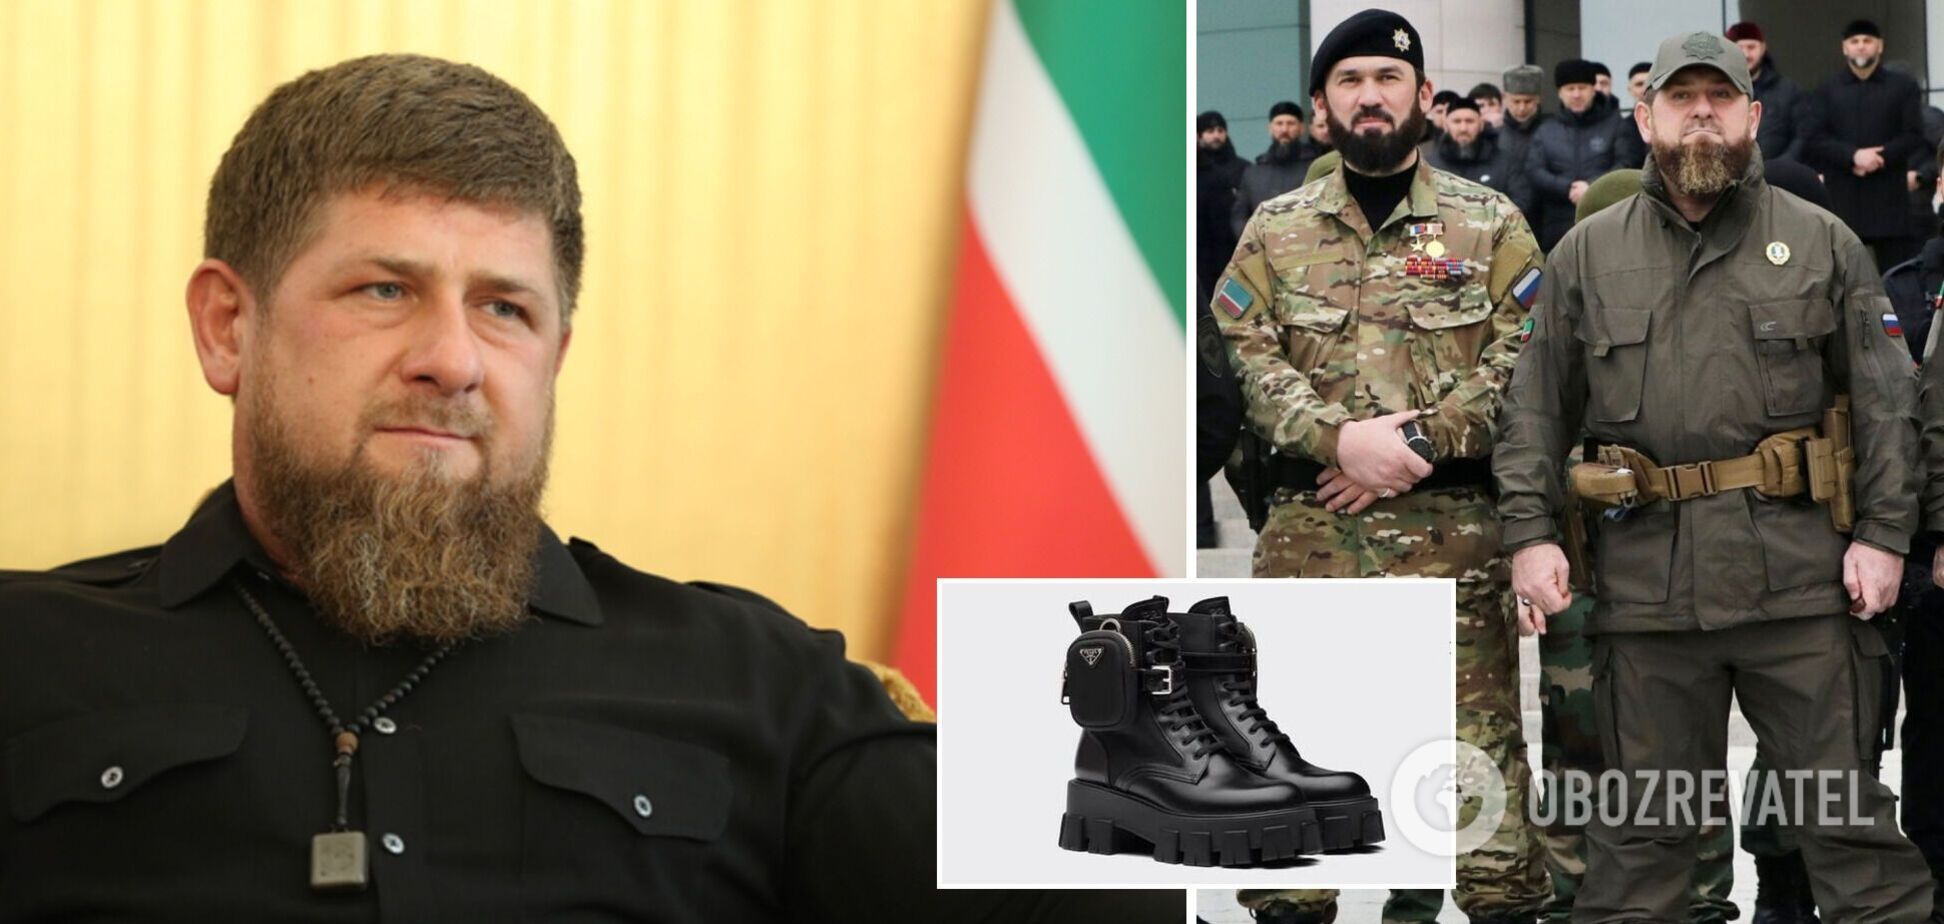 Глава Чечні Кадиров провів парад у черевиках від Prada за €1250: фото викликало жарти в мережі